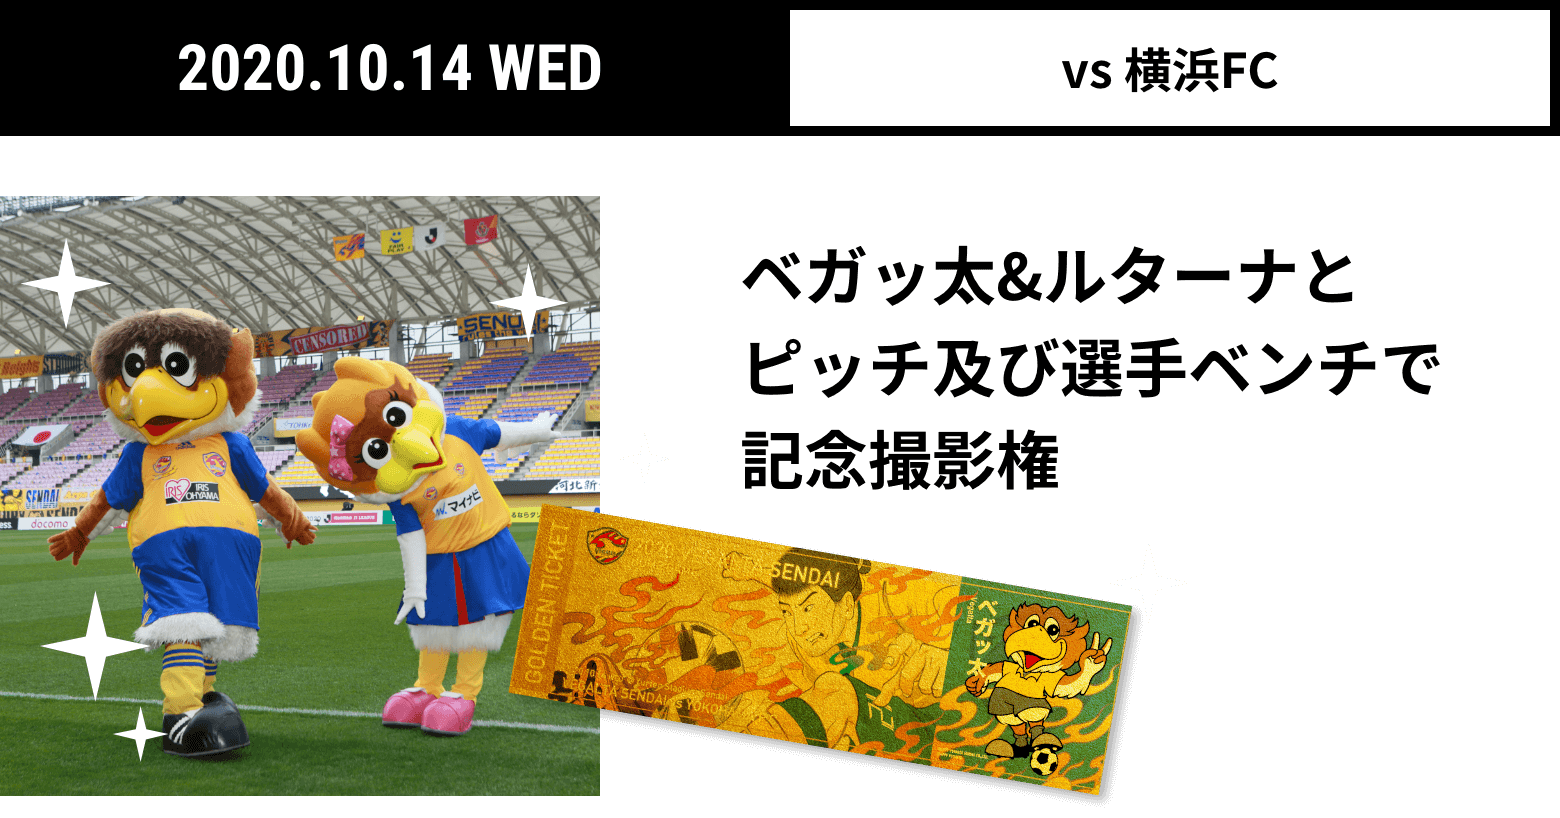 2020.10.14 WED vs 横浜FC ベガッ太&ルターナとピッチ及び選手ベンチで記念撮影権